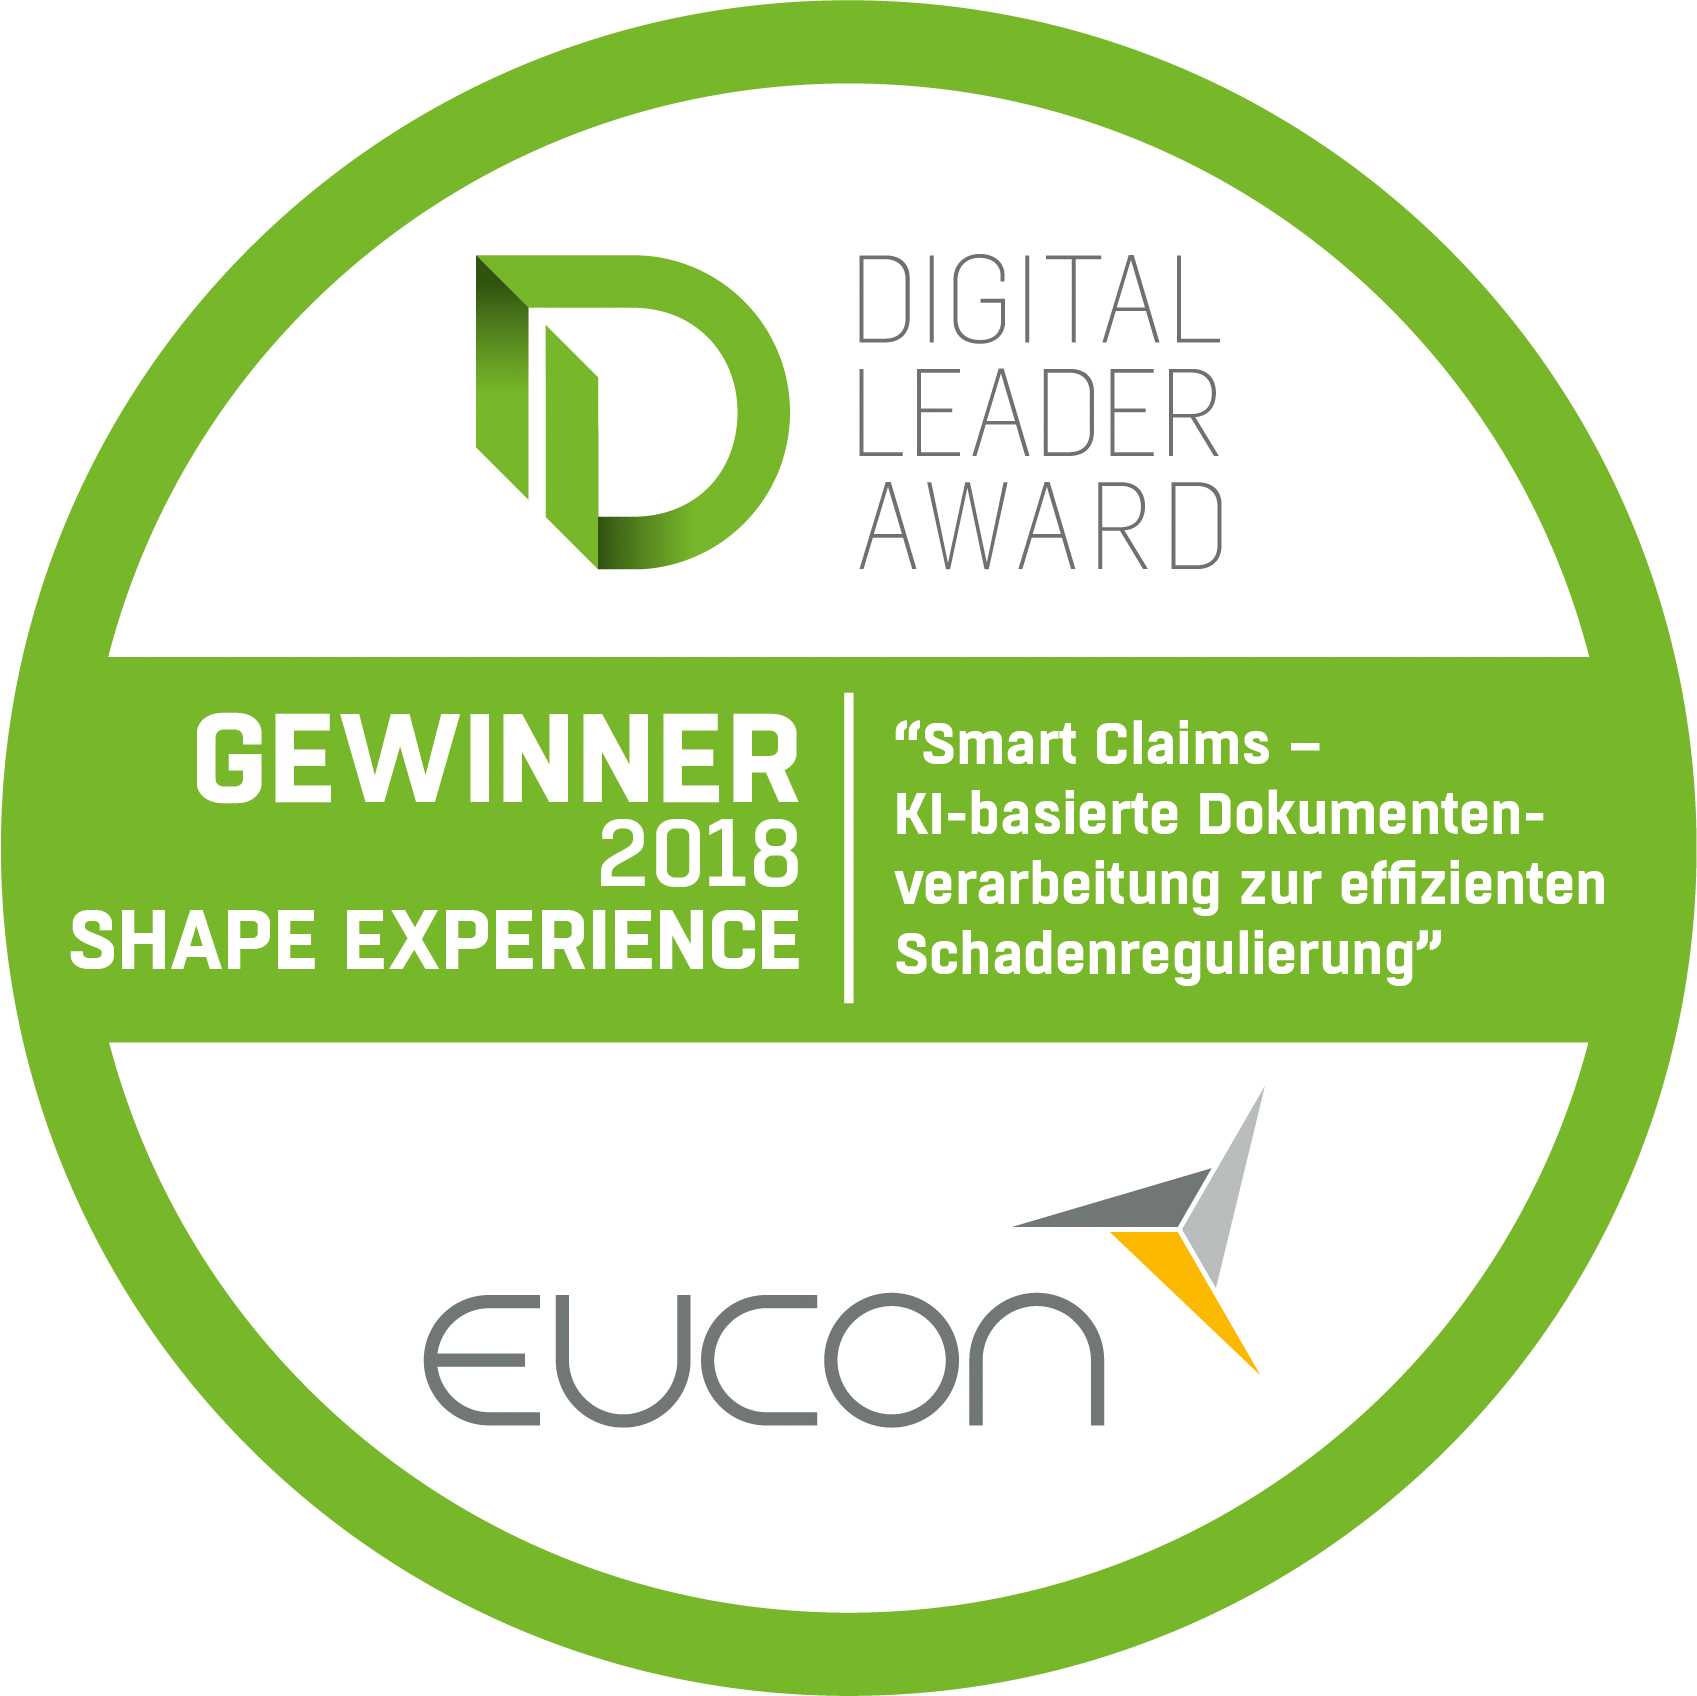 Digital Leader Award 2018